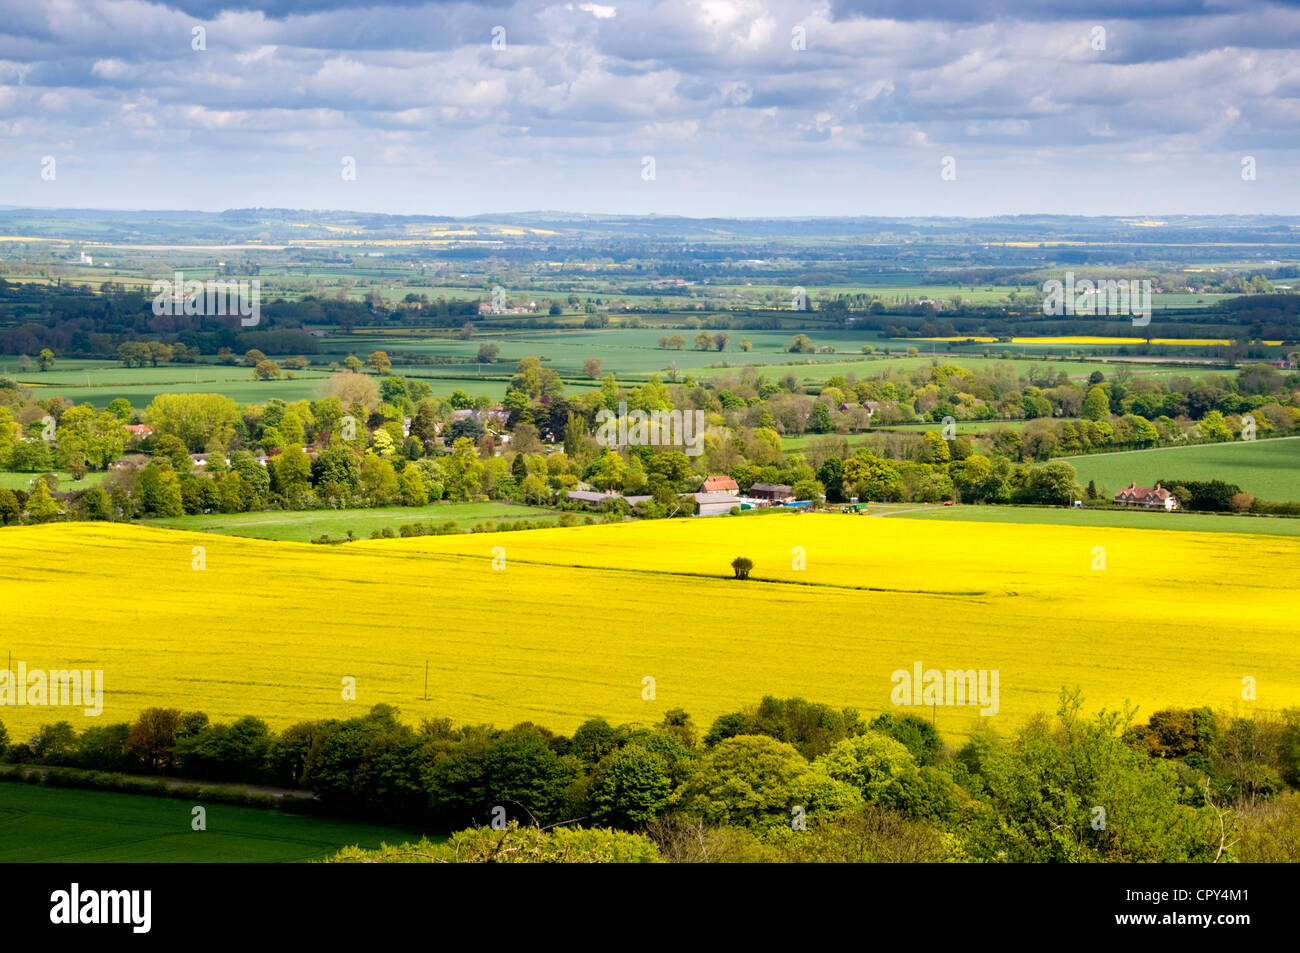 Dollar - Ansicht Aylesbury Plain fr Beacon Hill - Chilterns - gelben Raps - Wälder - blaue Ferne Sonnenlicht und Schatten Stockfoto